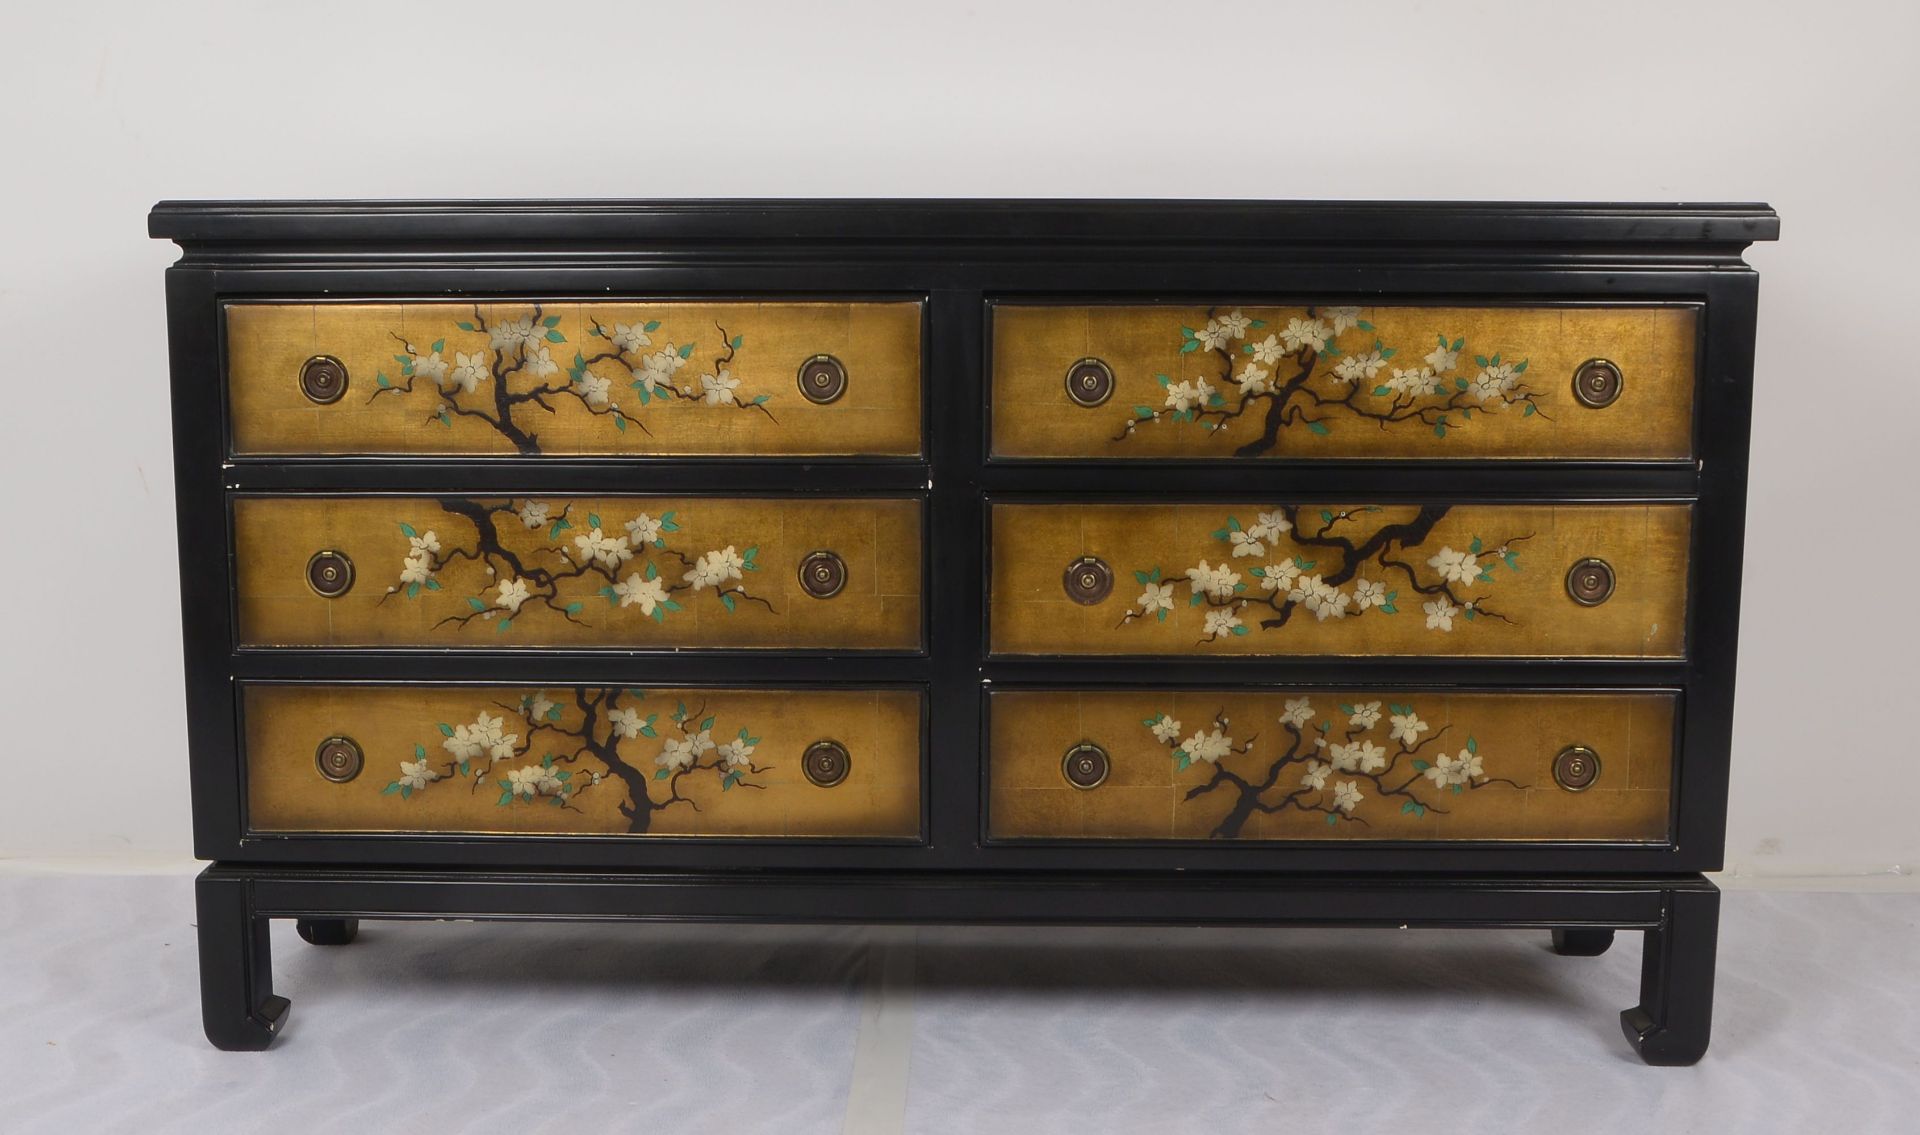 Sideboard (im chinesischen Stil), 6-schuebig, Front mit floralem Dekor (-Bluetenbaum-) auf vergoldet - Image 2 of 3